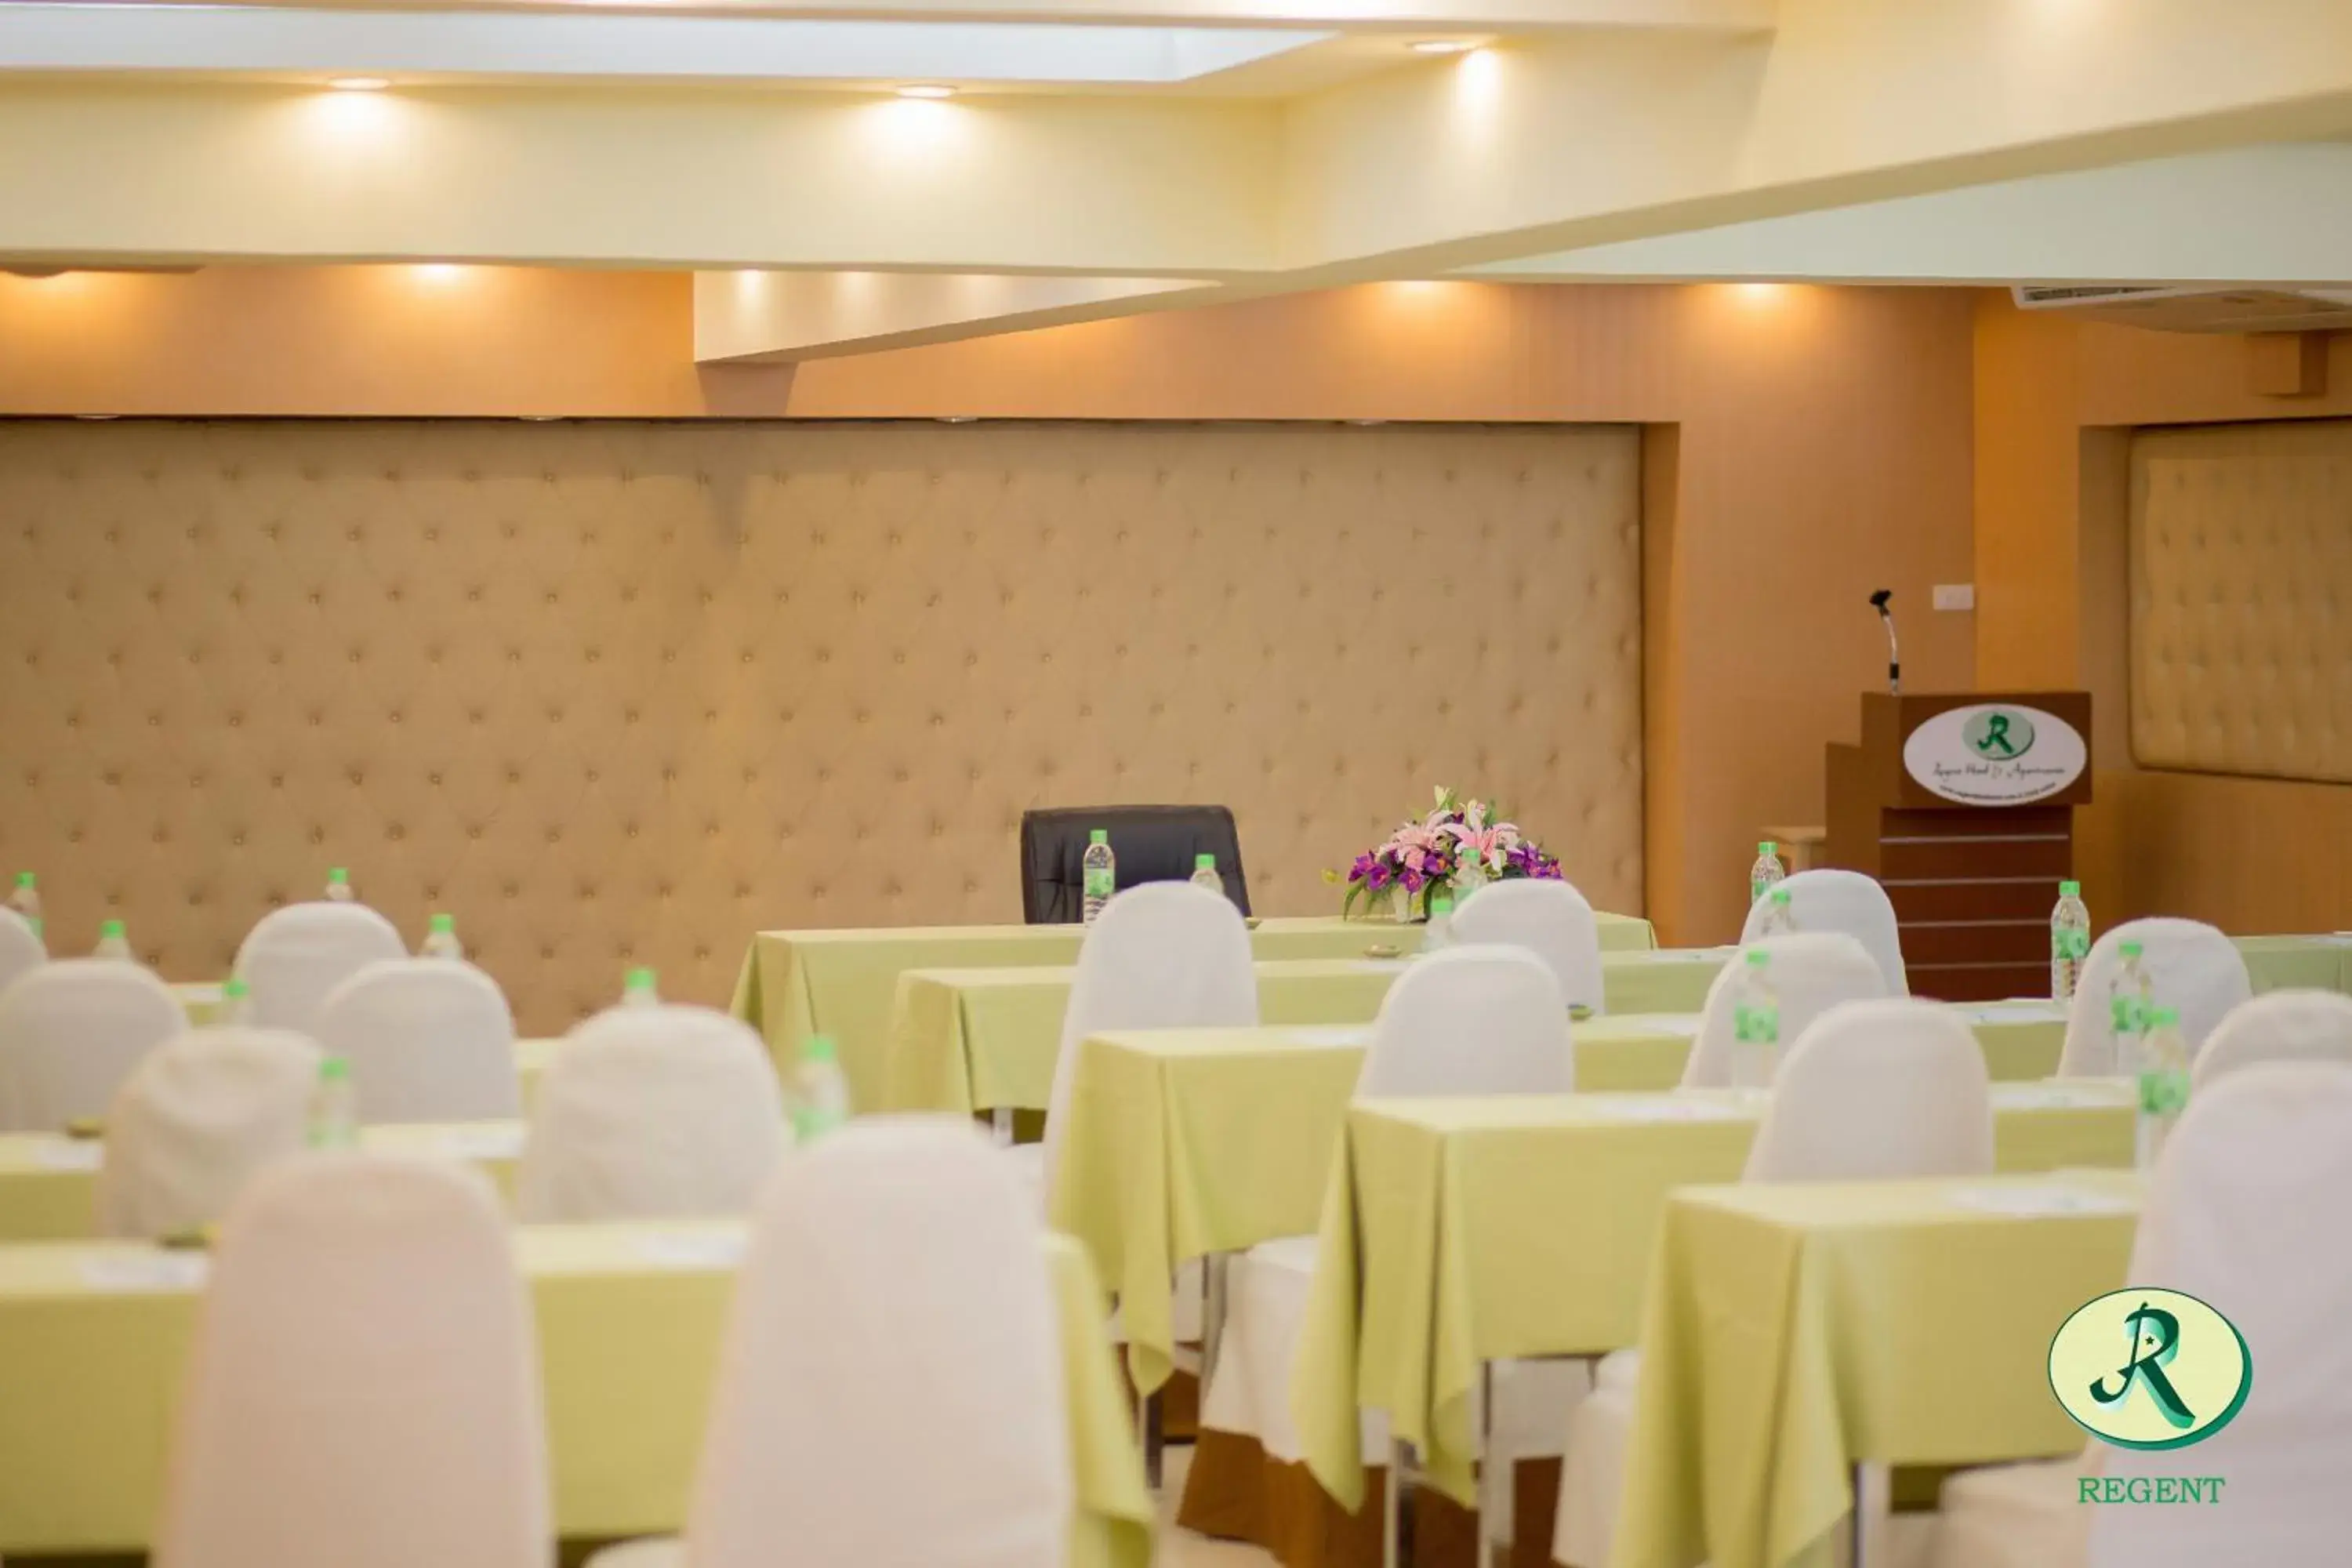 Meeting/conference room, Banquet Facilities in Regent Ramkhamhaeng 22